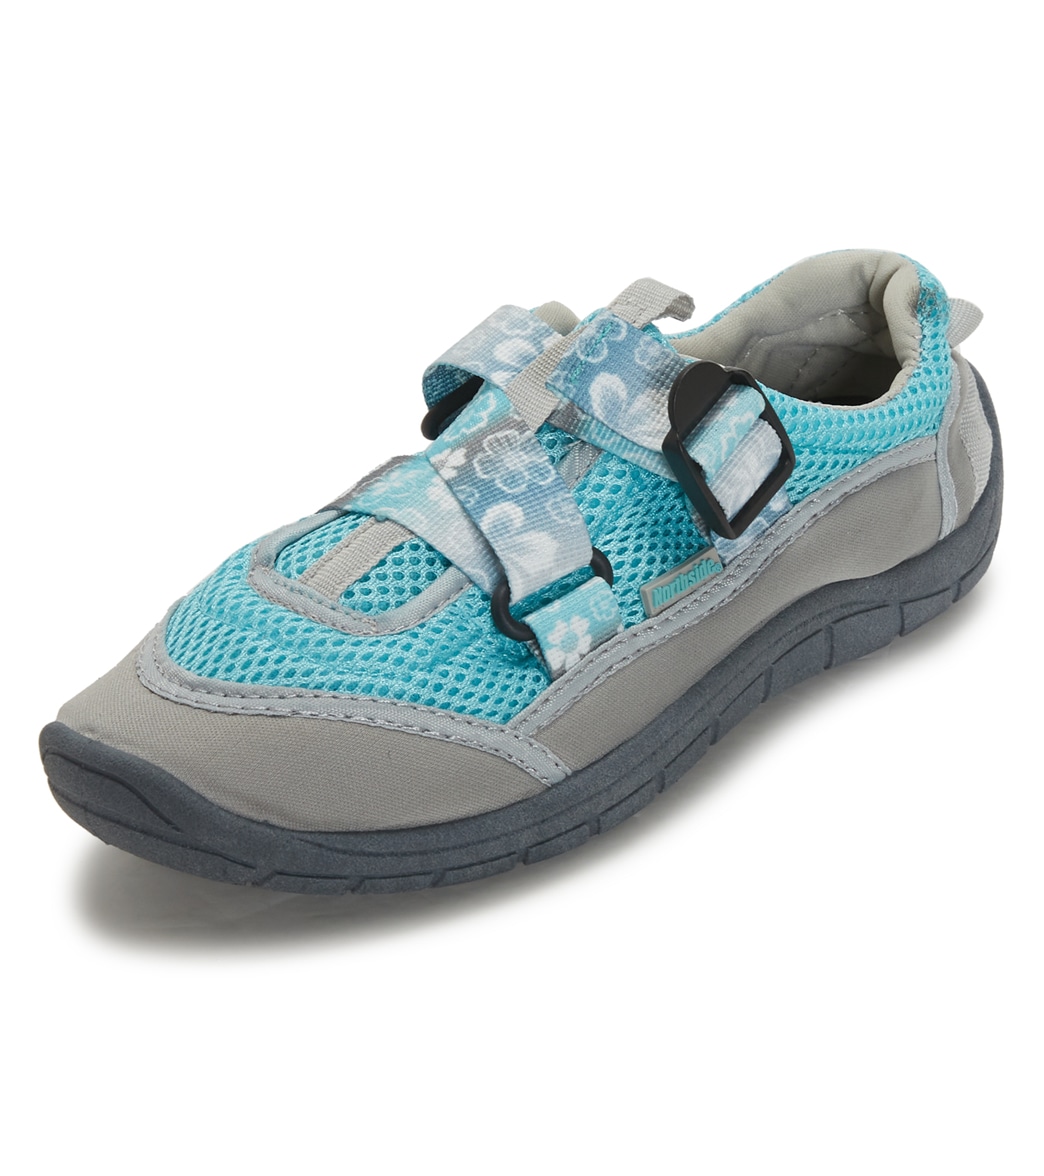 Northside Women's Brille Se Water Shoes - Gray/Lt Blue 6 - Swimoutlet.com